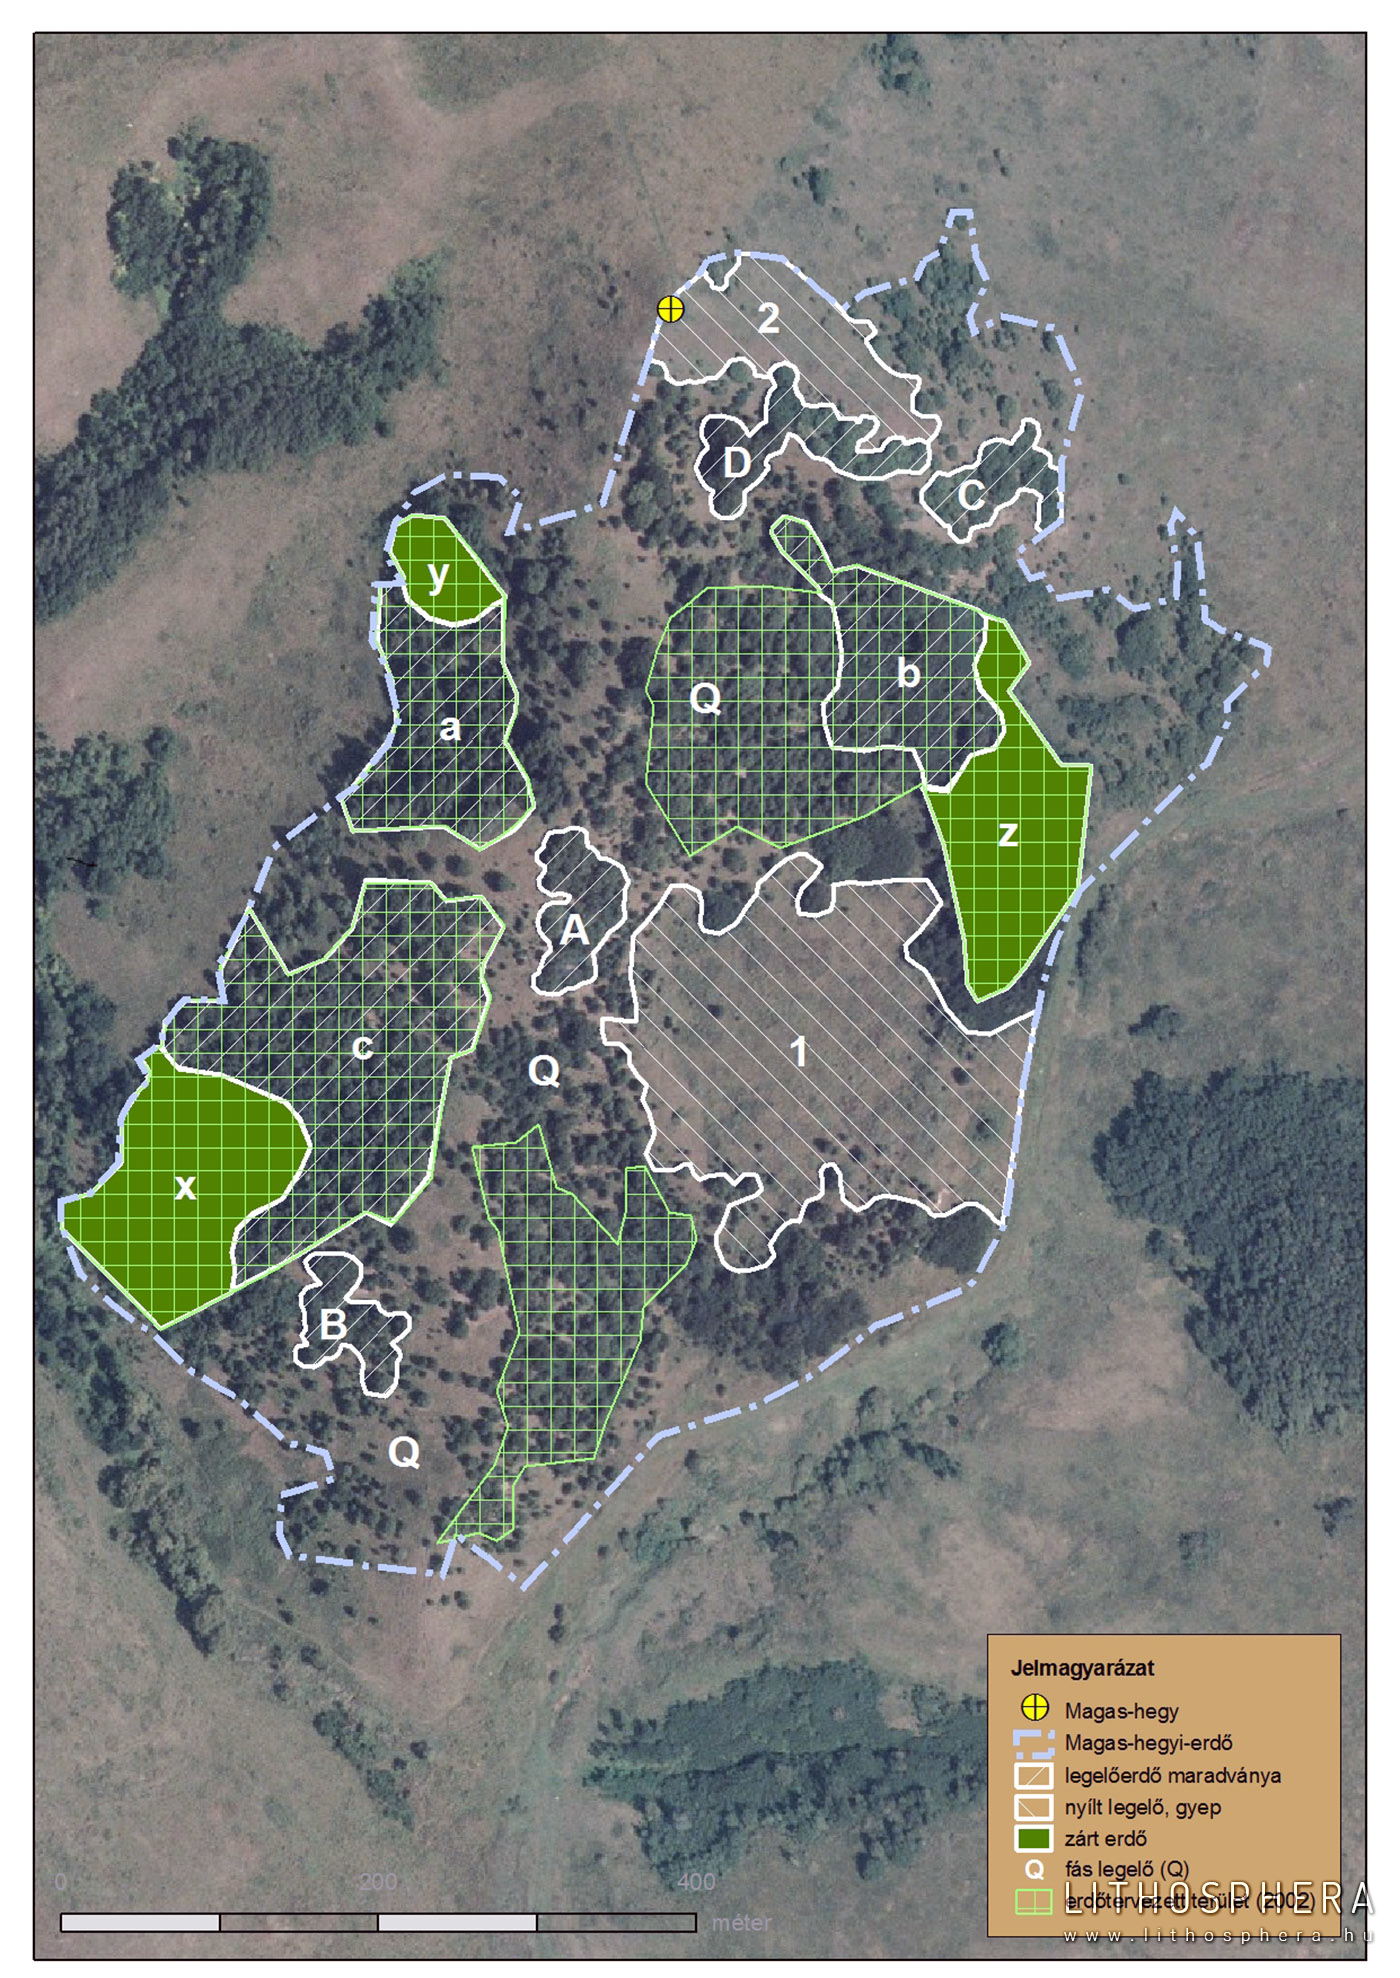 Magas-hegyi-erdő felszínborítási típusainak és erdőtervezet területének határa a 2005-ös légfelvételre vetítve